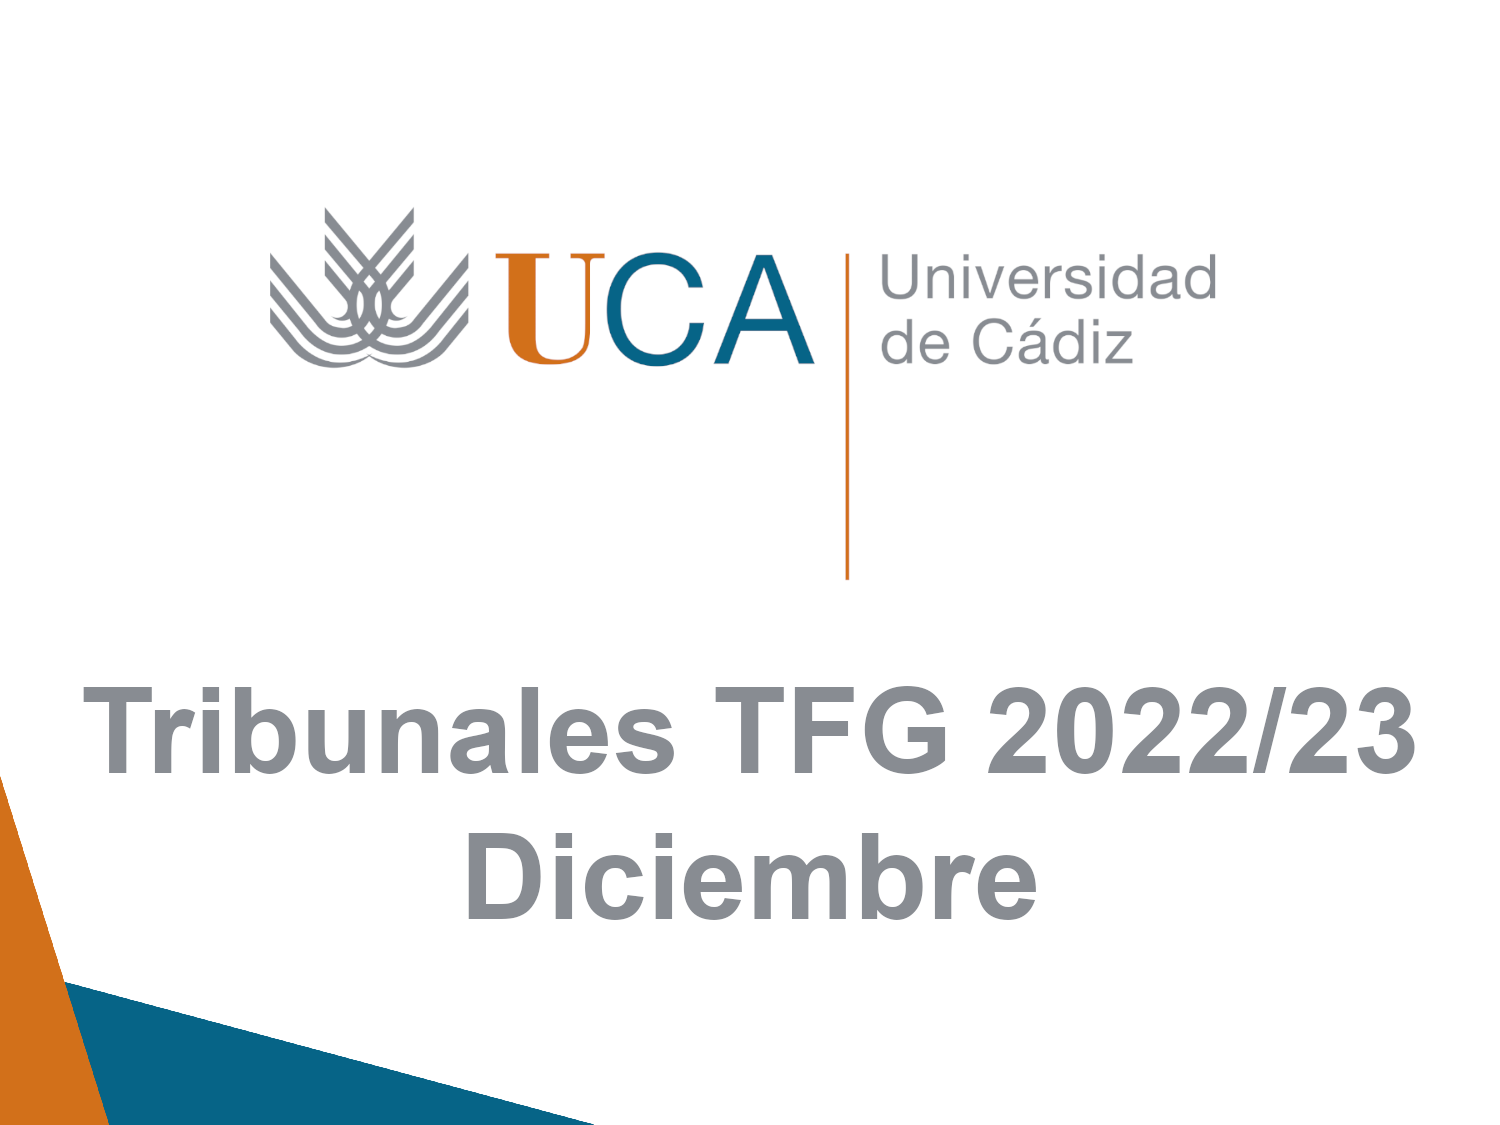 Tribunales de diciembre TFG del curso 2022/23